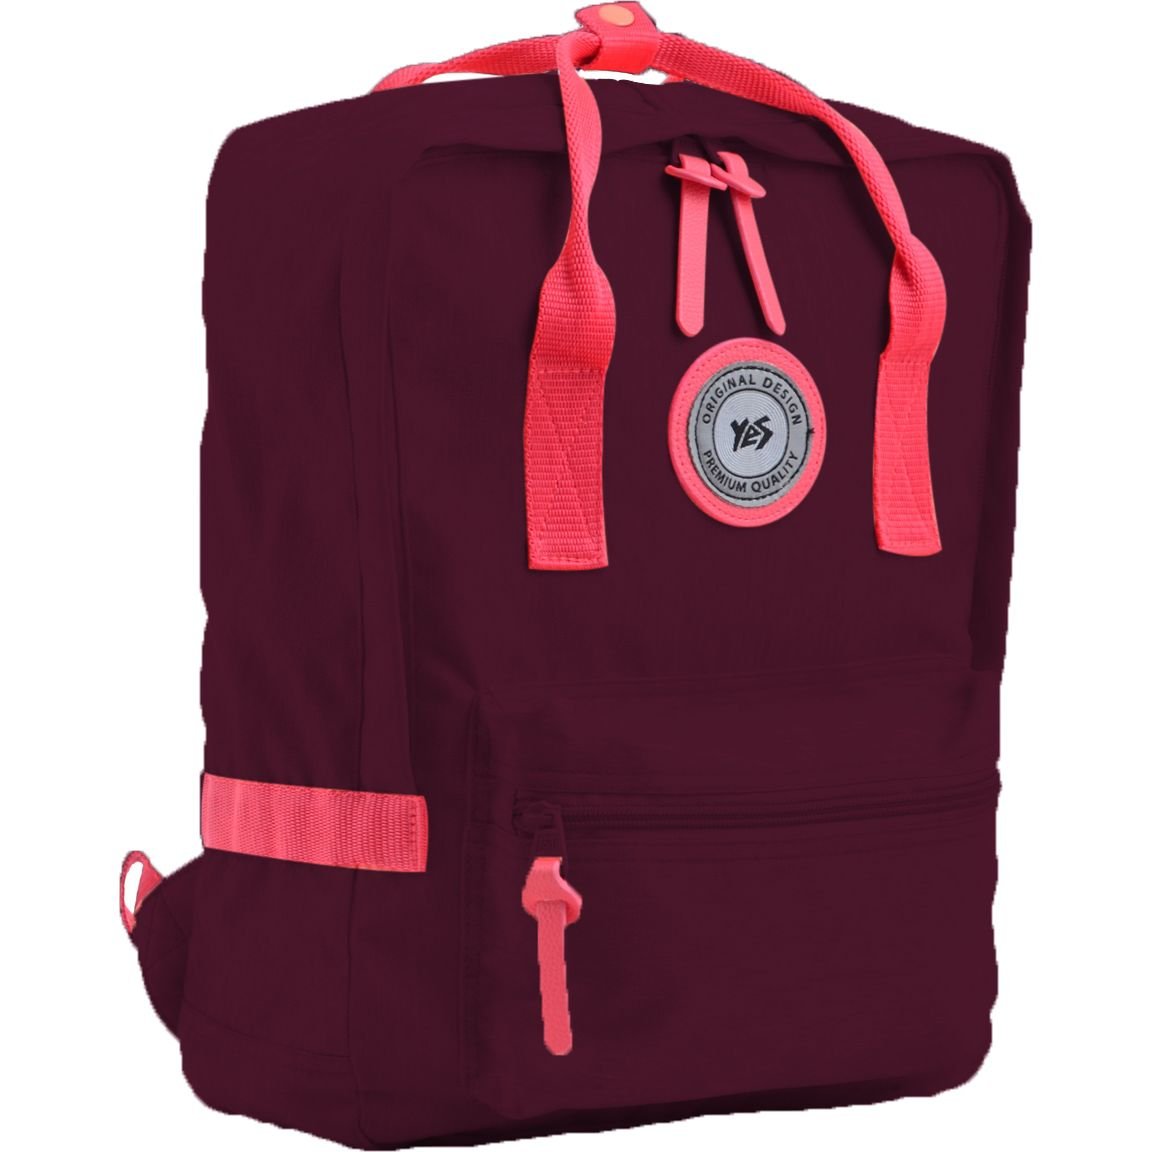 Рюкзак для підлітків Yes ST-24 Tawny Port, бордовый (555585) - фото 1